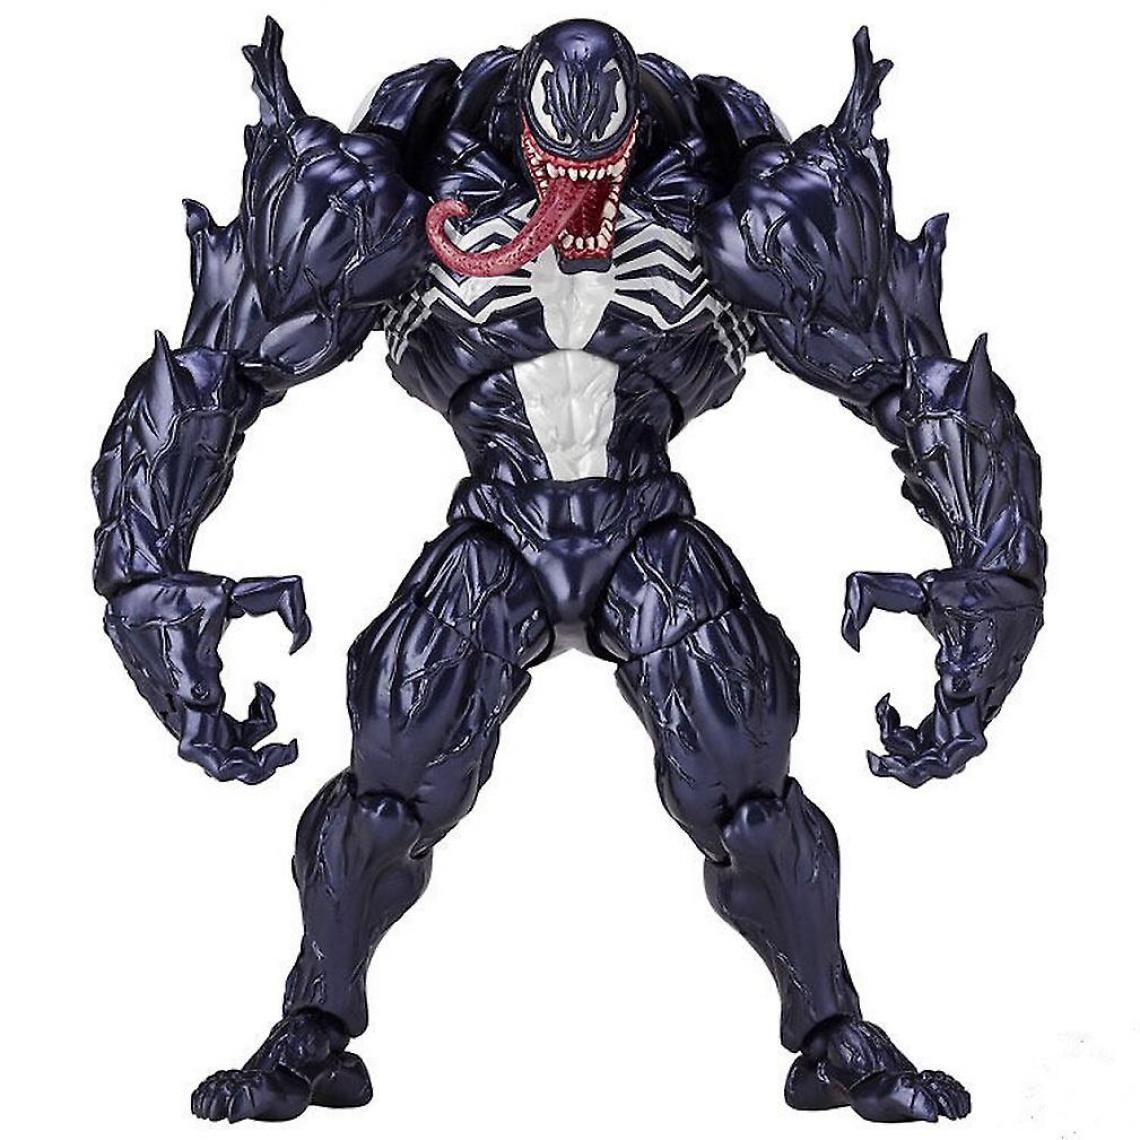 Universal - Amazing Spider-Man Mountain par Venom Eddie Brock Image Toy() - Mangas